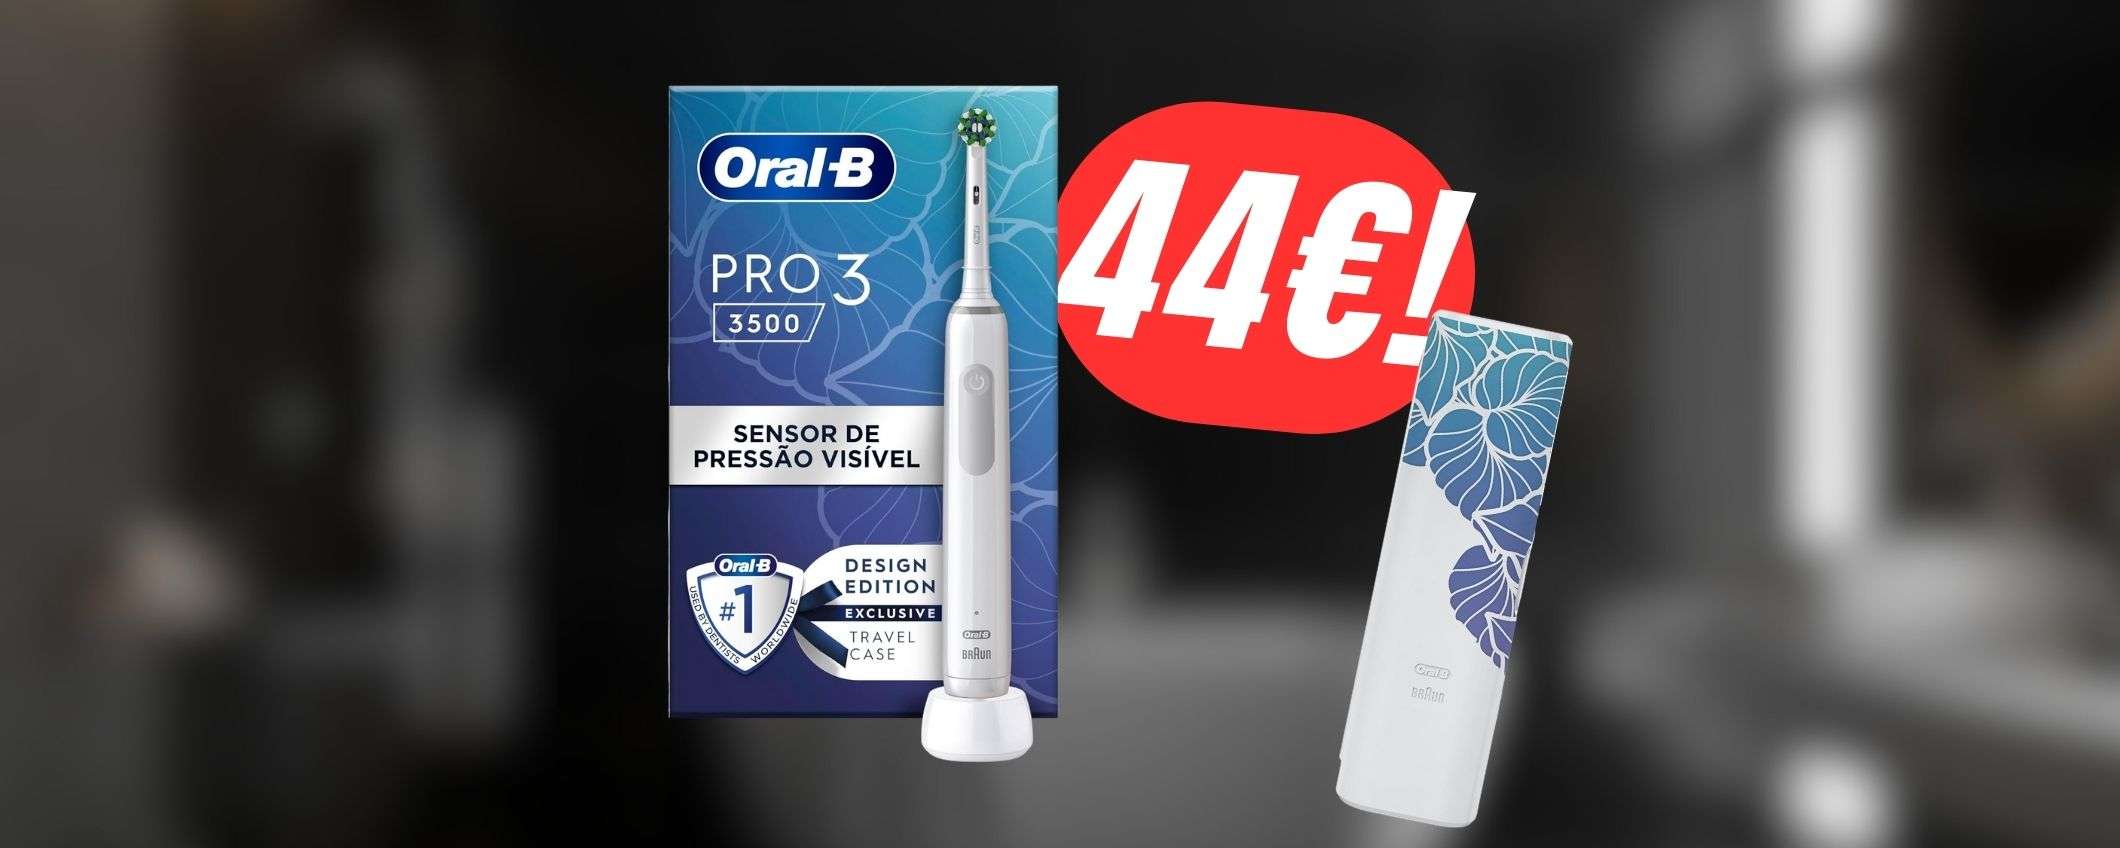 SCONTO FOLLE per lo spazzolino elettrico Oral-B a 44€: è dotato di indicatore LED!